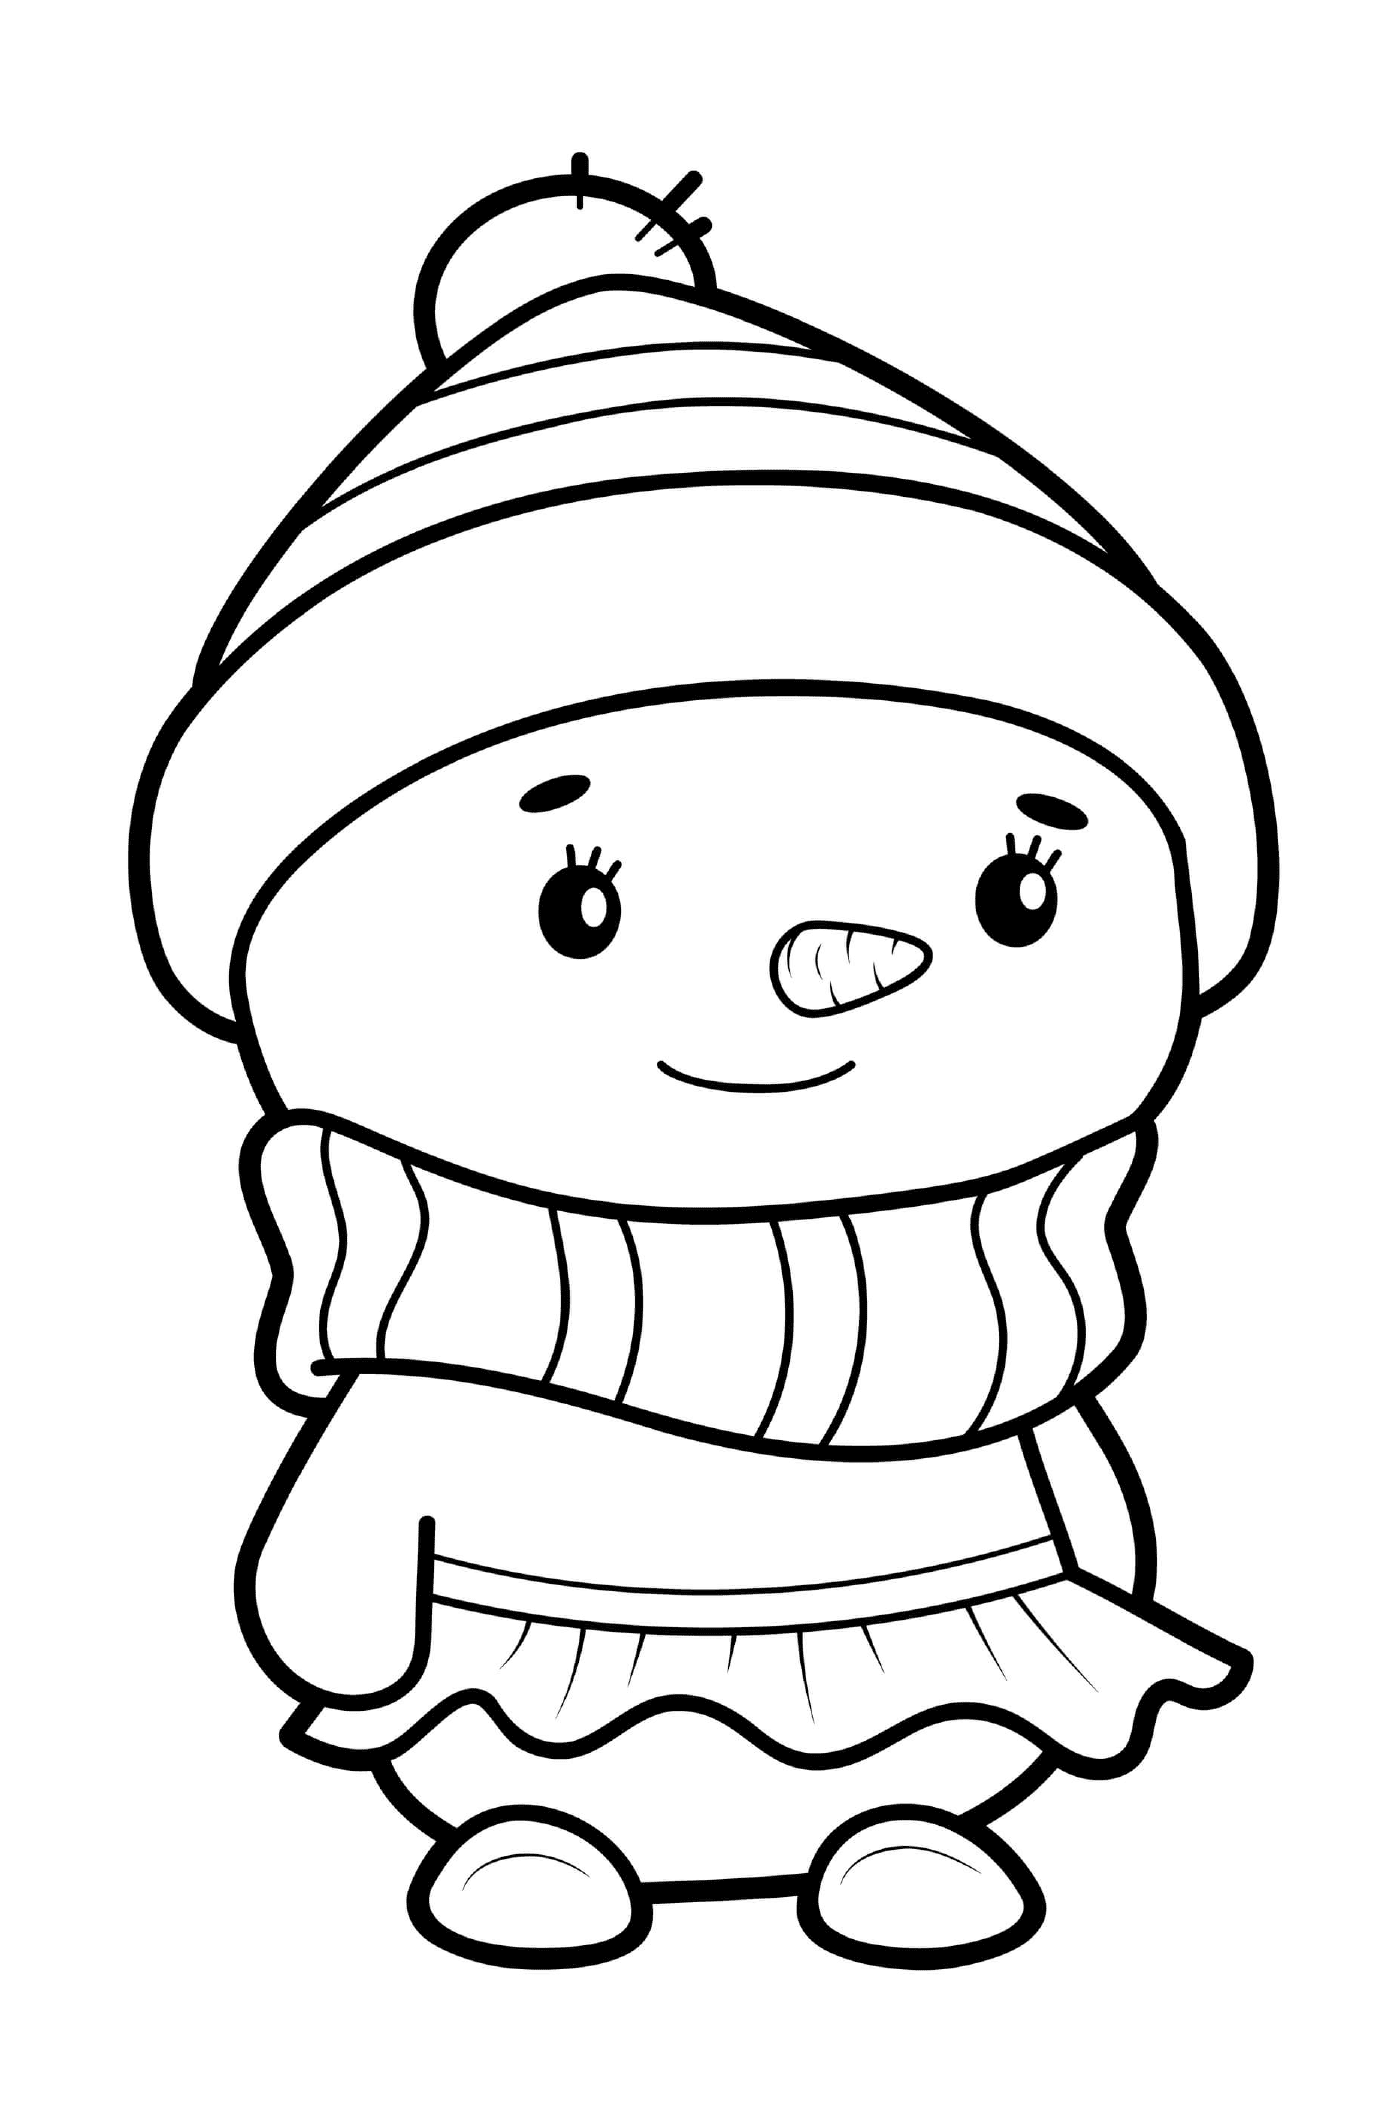   Un bonhomme de neige habillé en fille avec une robe et un chapeau 